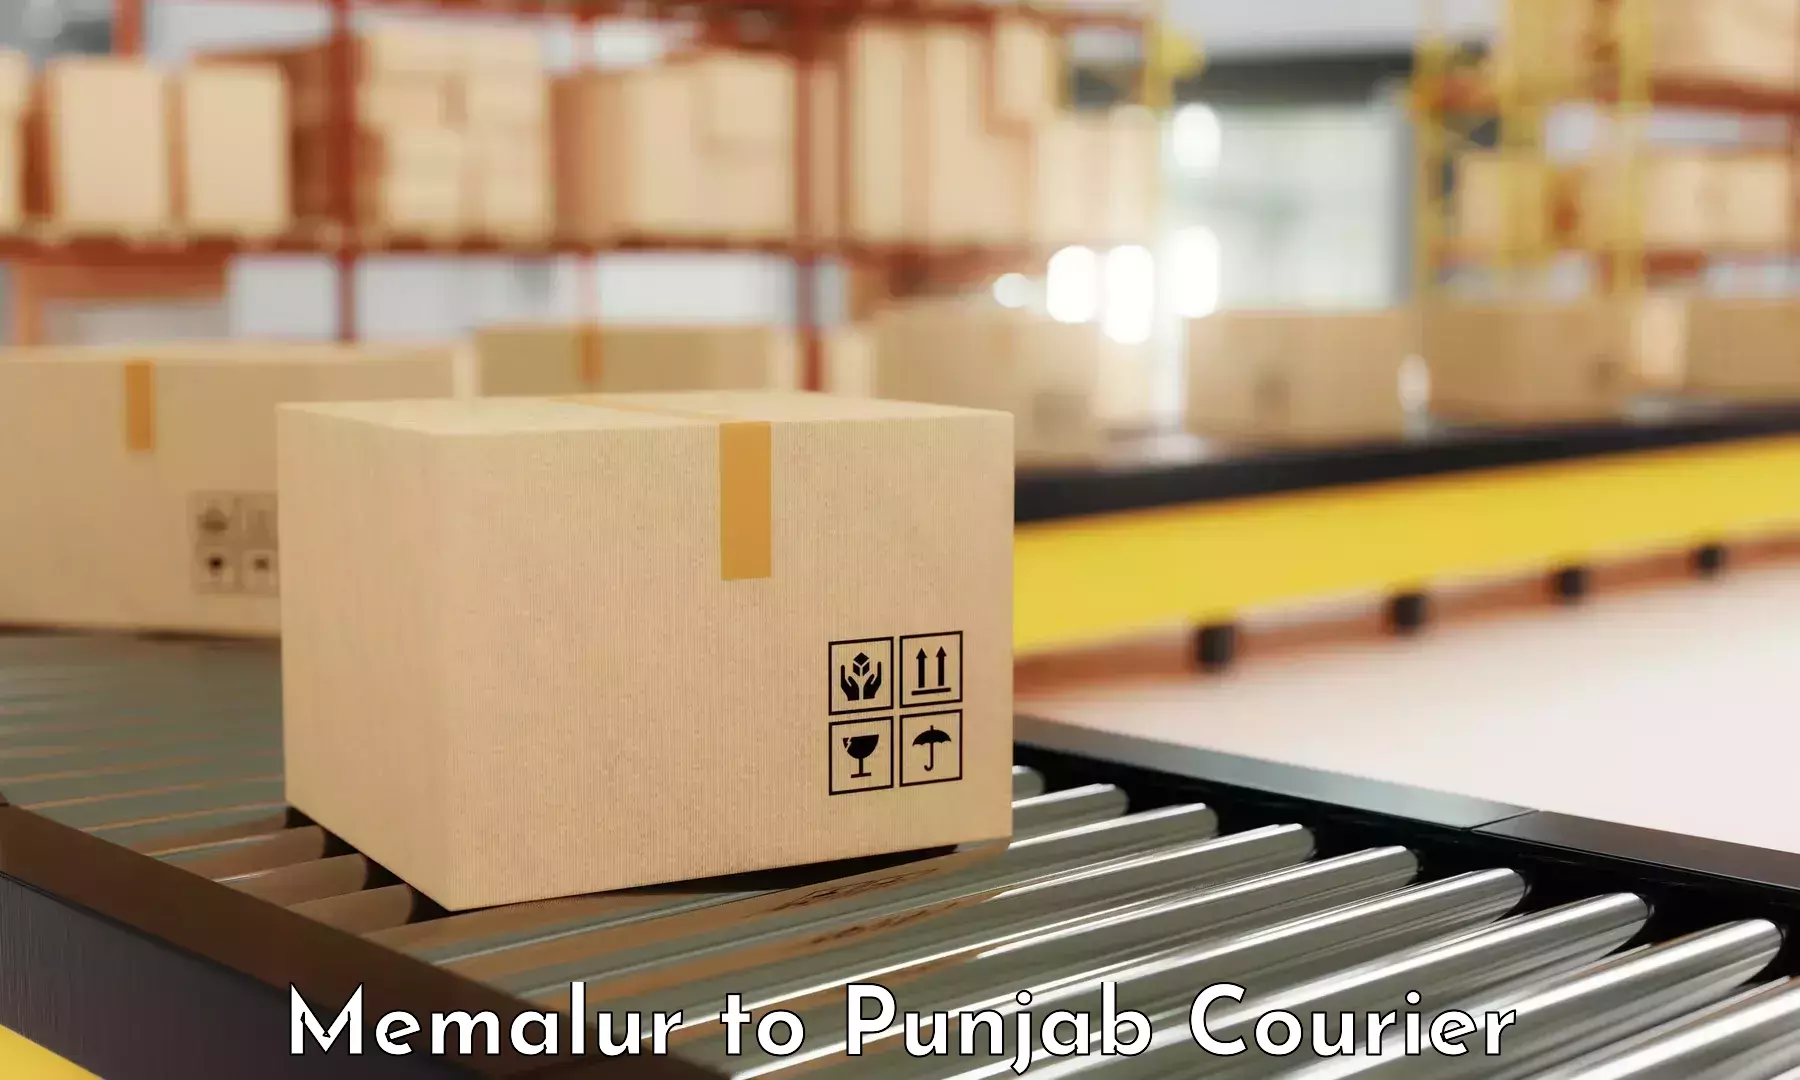 Efficient parcel transport Memalur to Malout